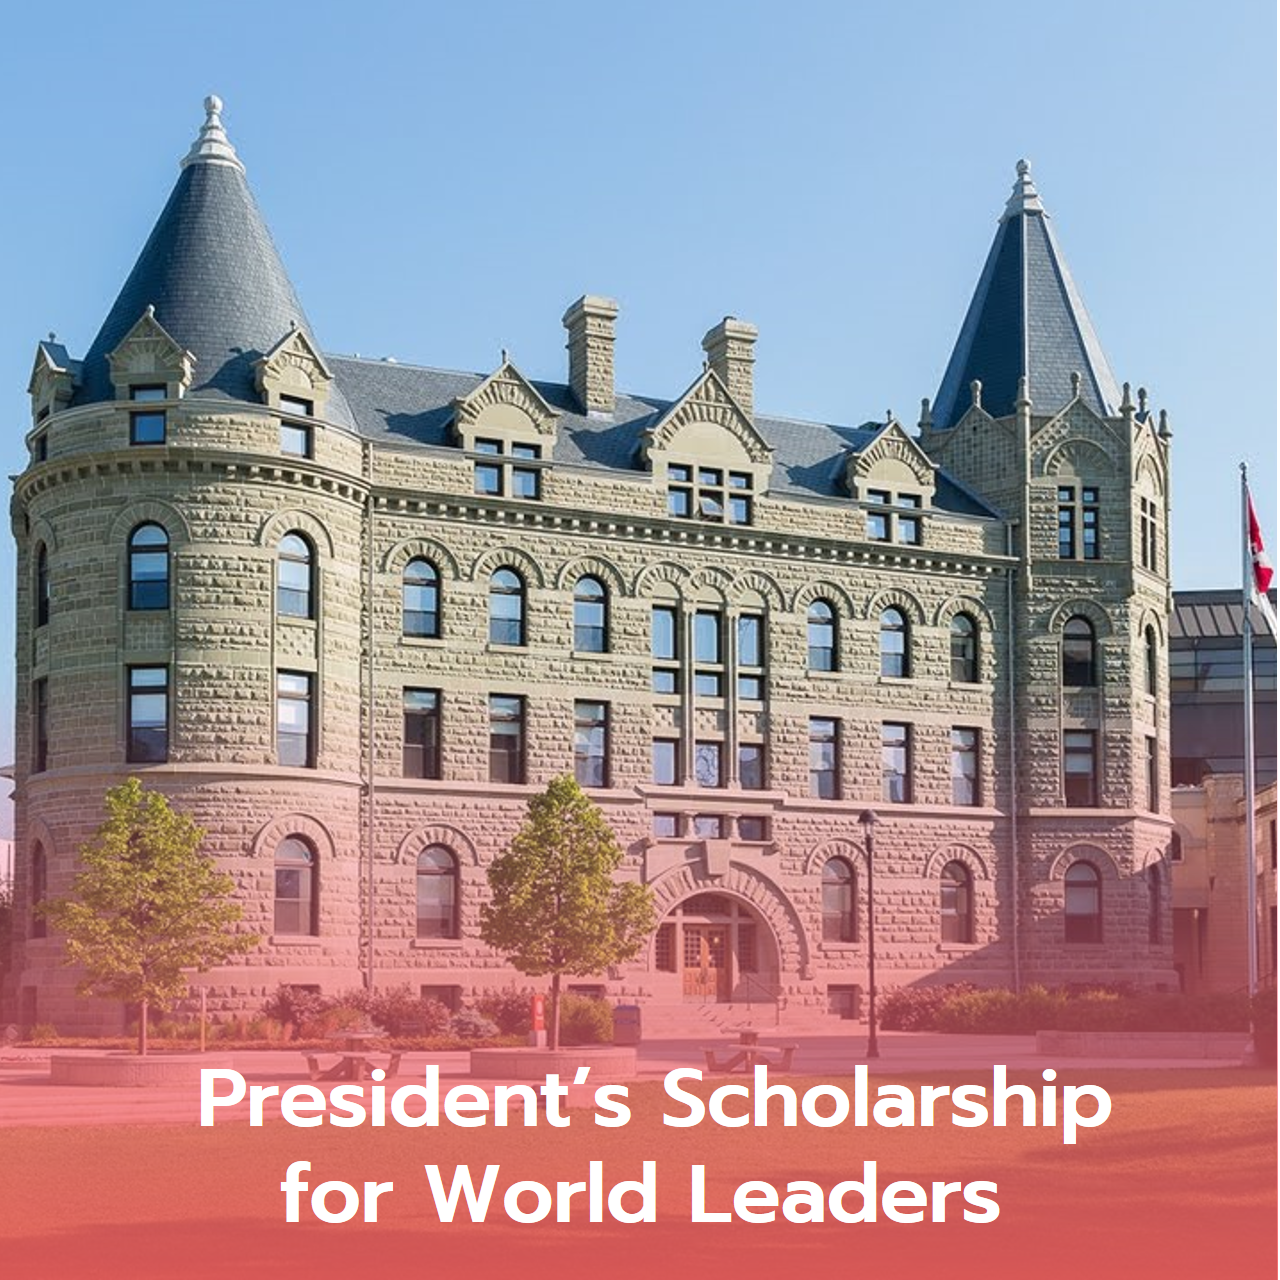  President’s Scholarship for World Leaders